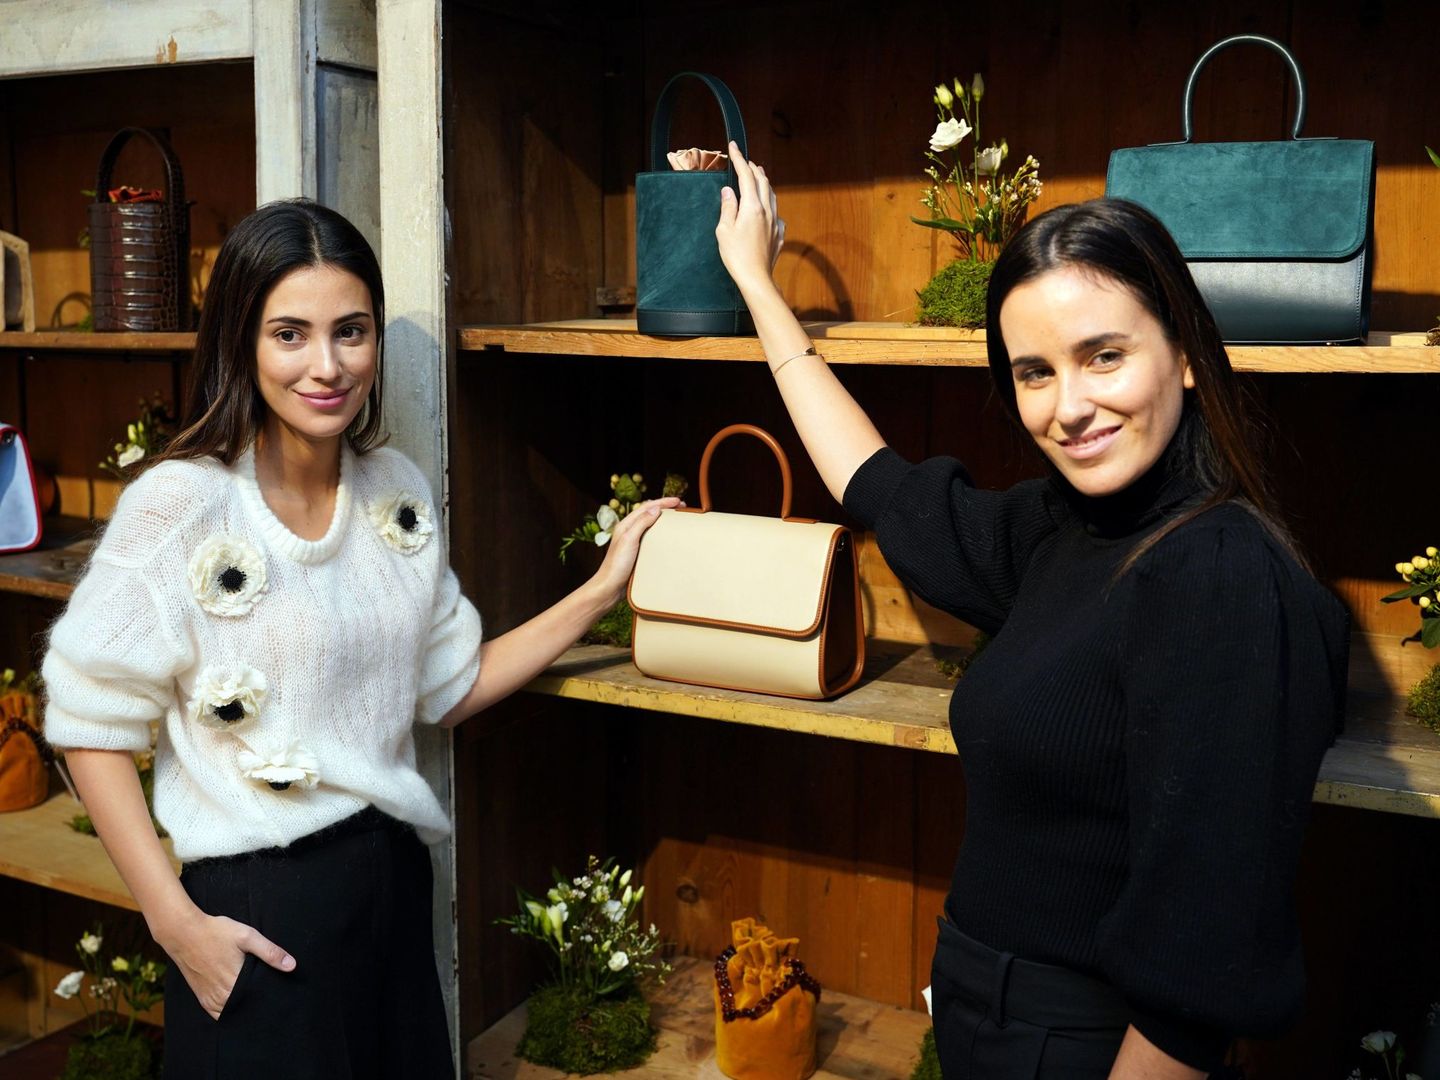 Alessandra de Osma y Moira Laporta enseñan su nueva colección. (Cordon Press)